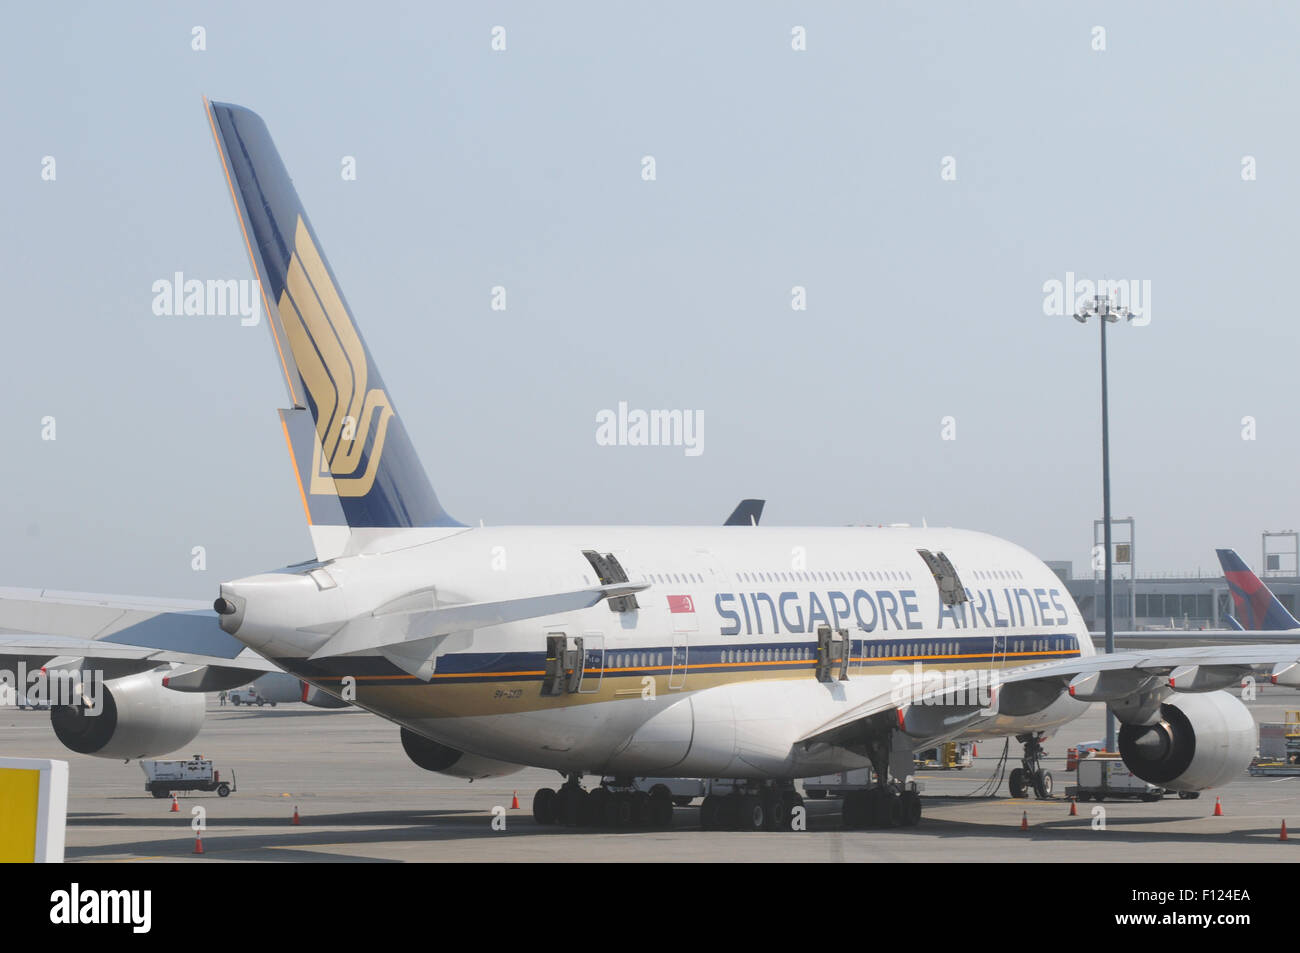 singapore airline passenger airplane at JFK international airport Stock Photo